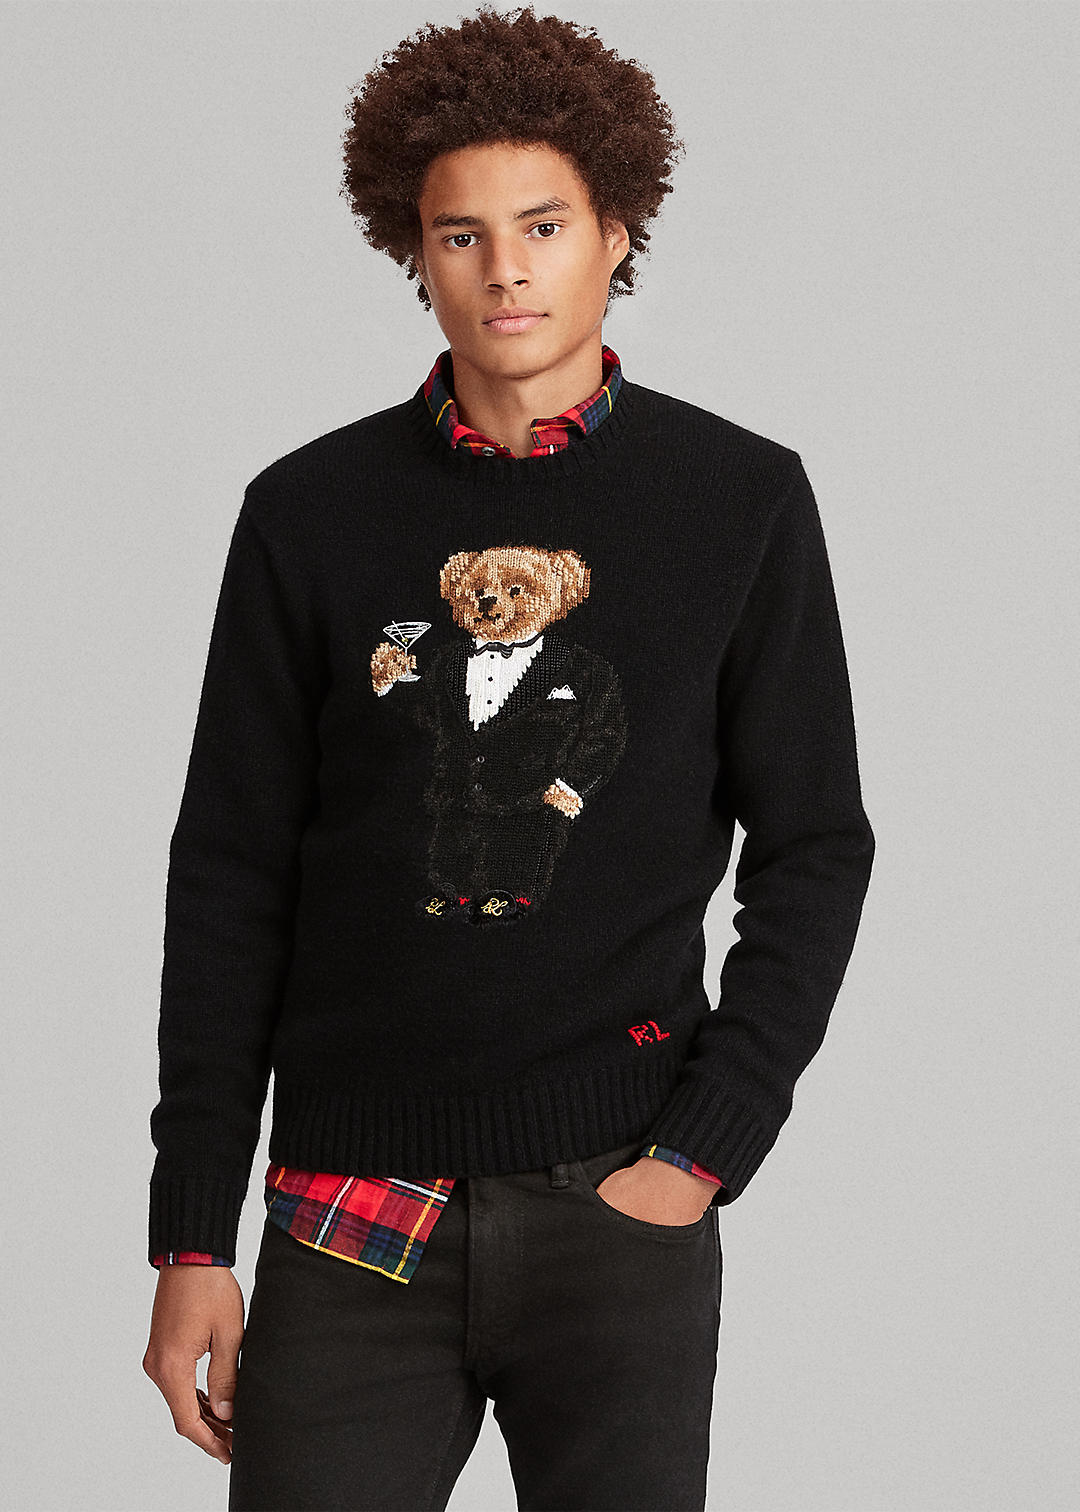 Martini Bear Wool Sweater